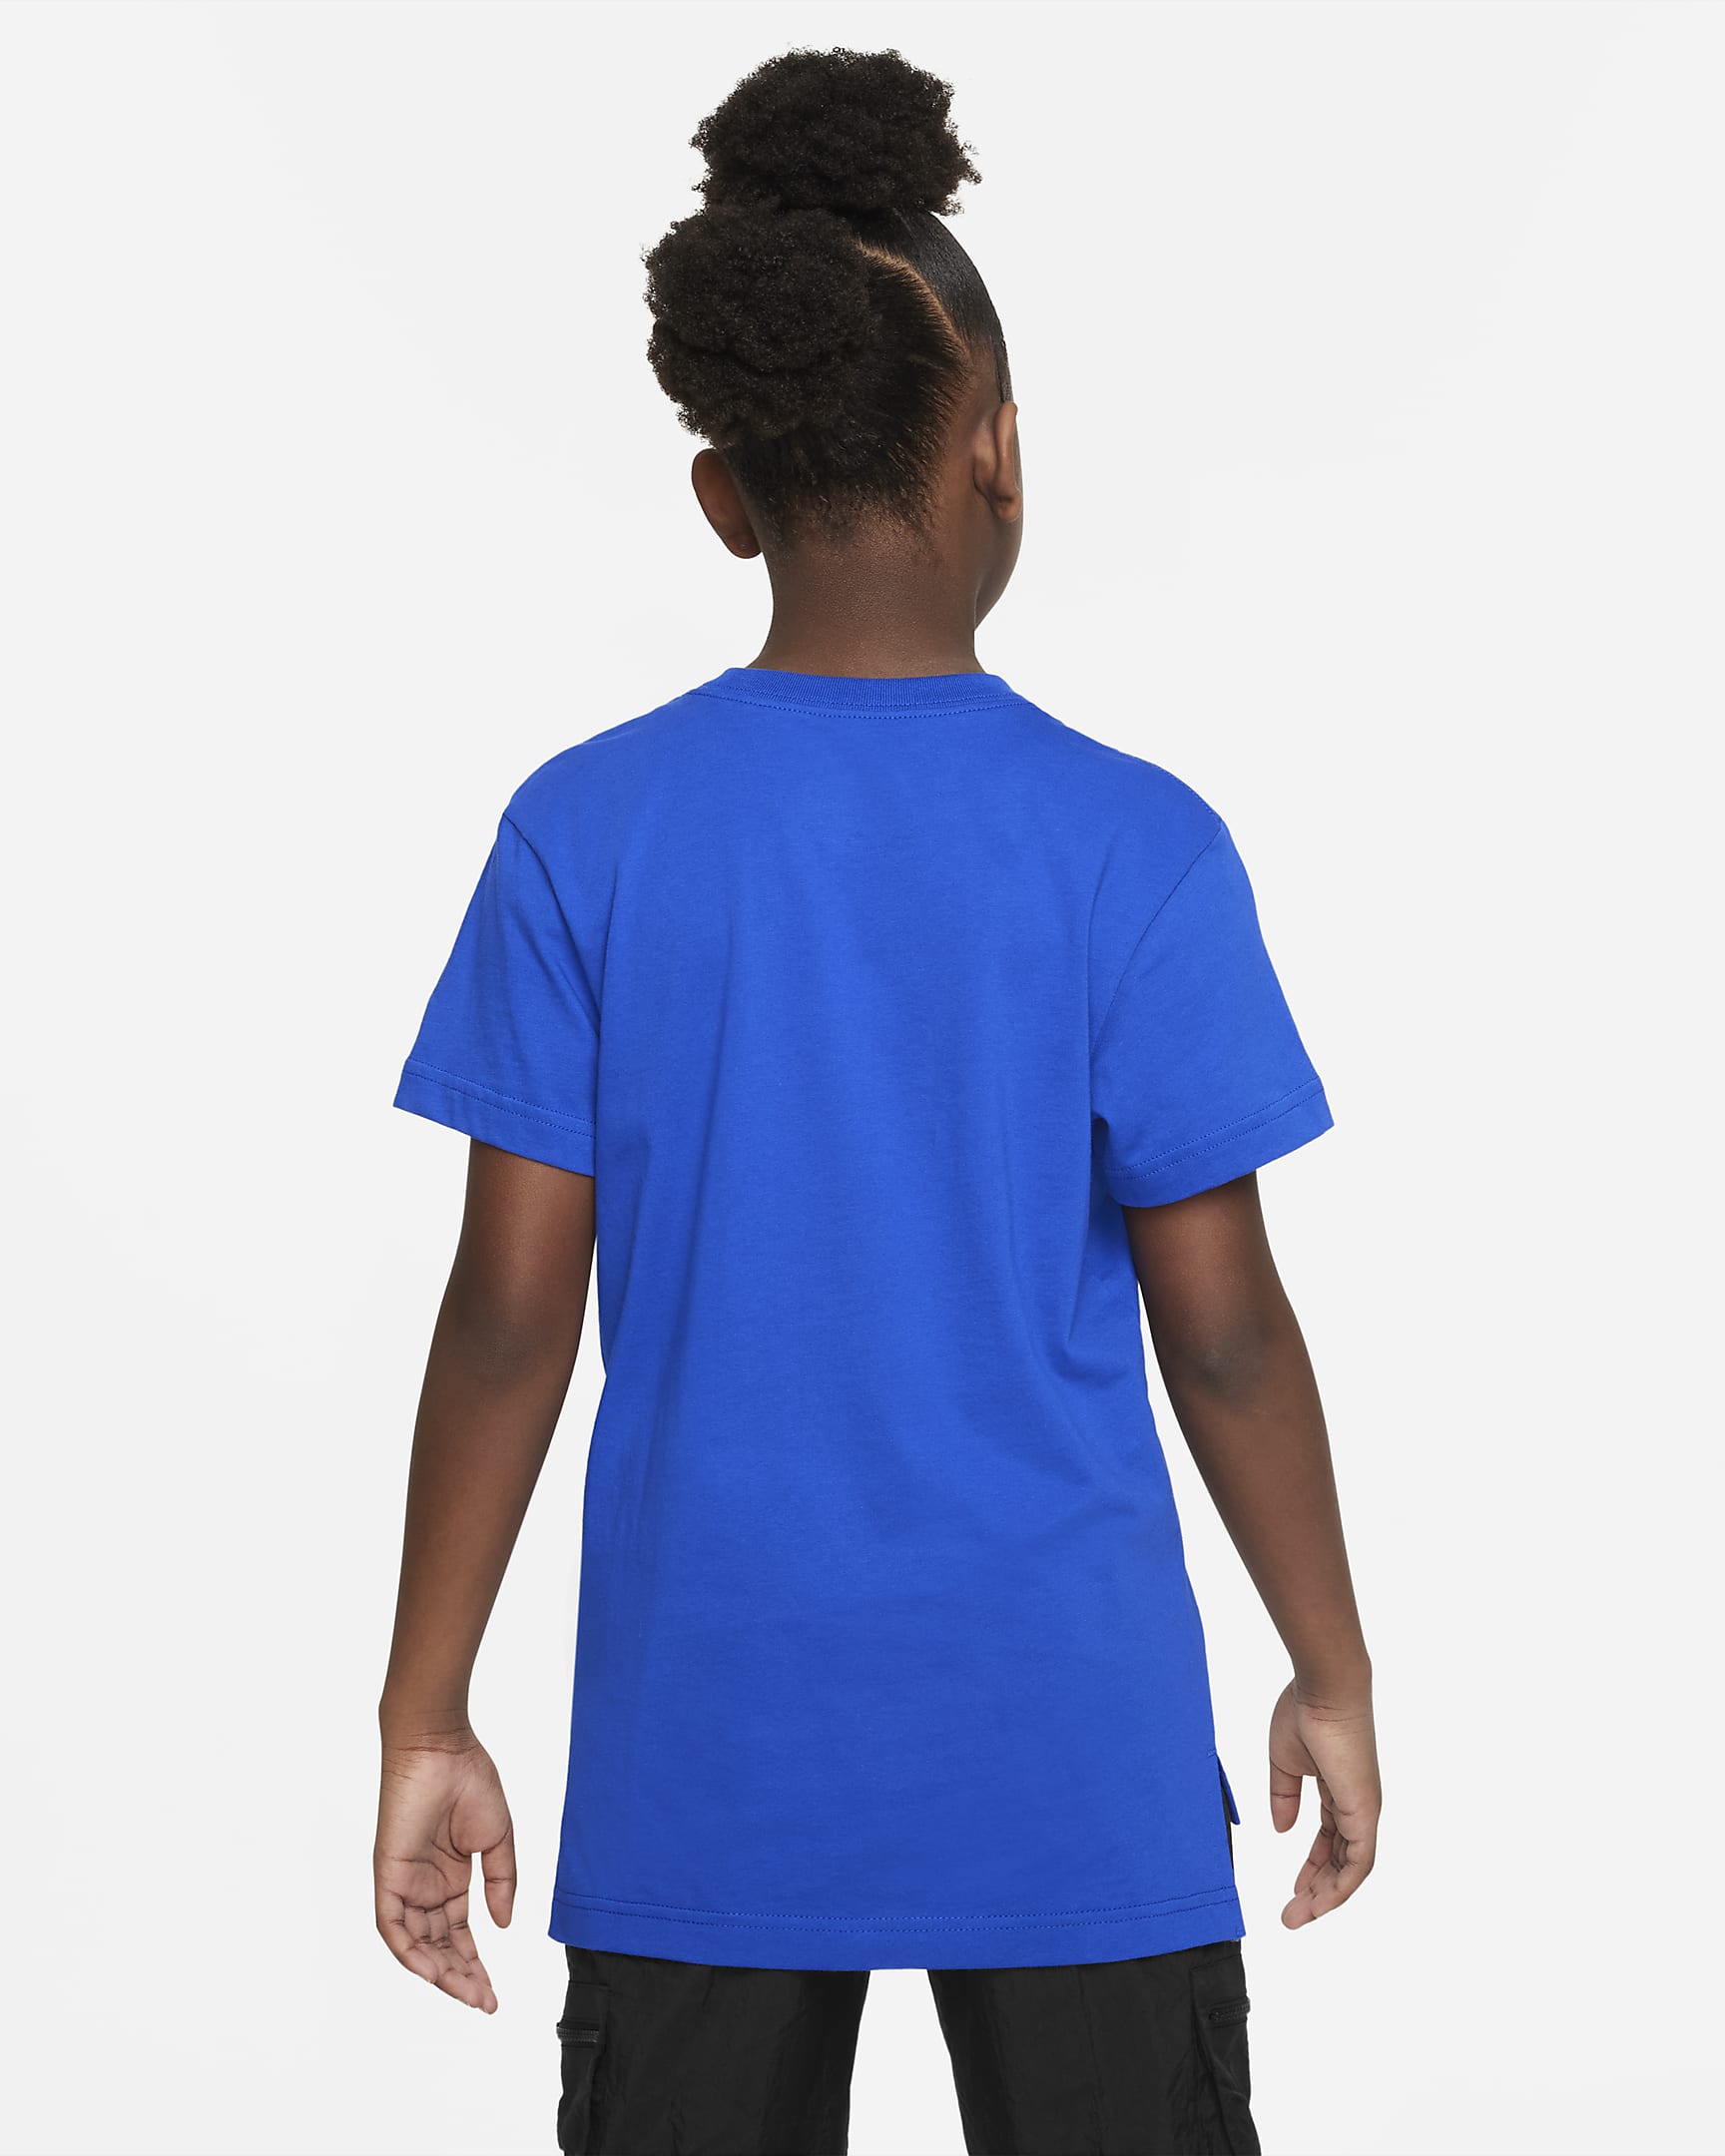 Nike Sportswear Older Kids' (Girls') T-Shirt. Nike PH